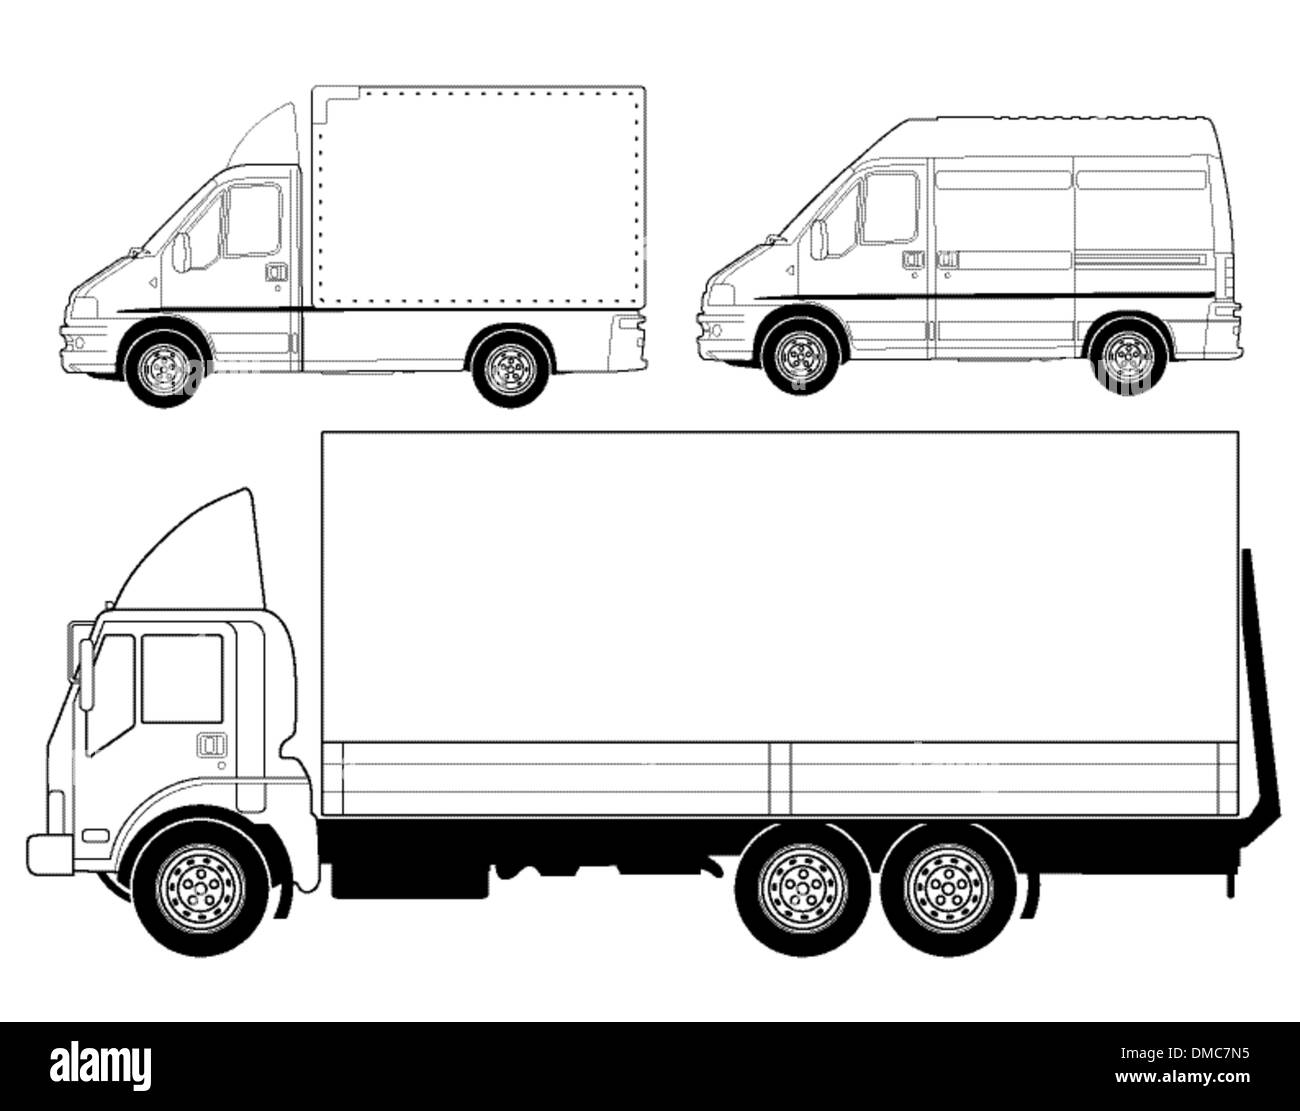 Les camions et fourgonnettes de livraison Illustration de Vecteur